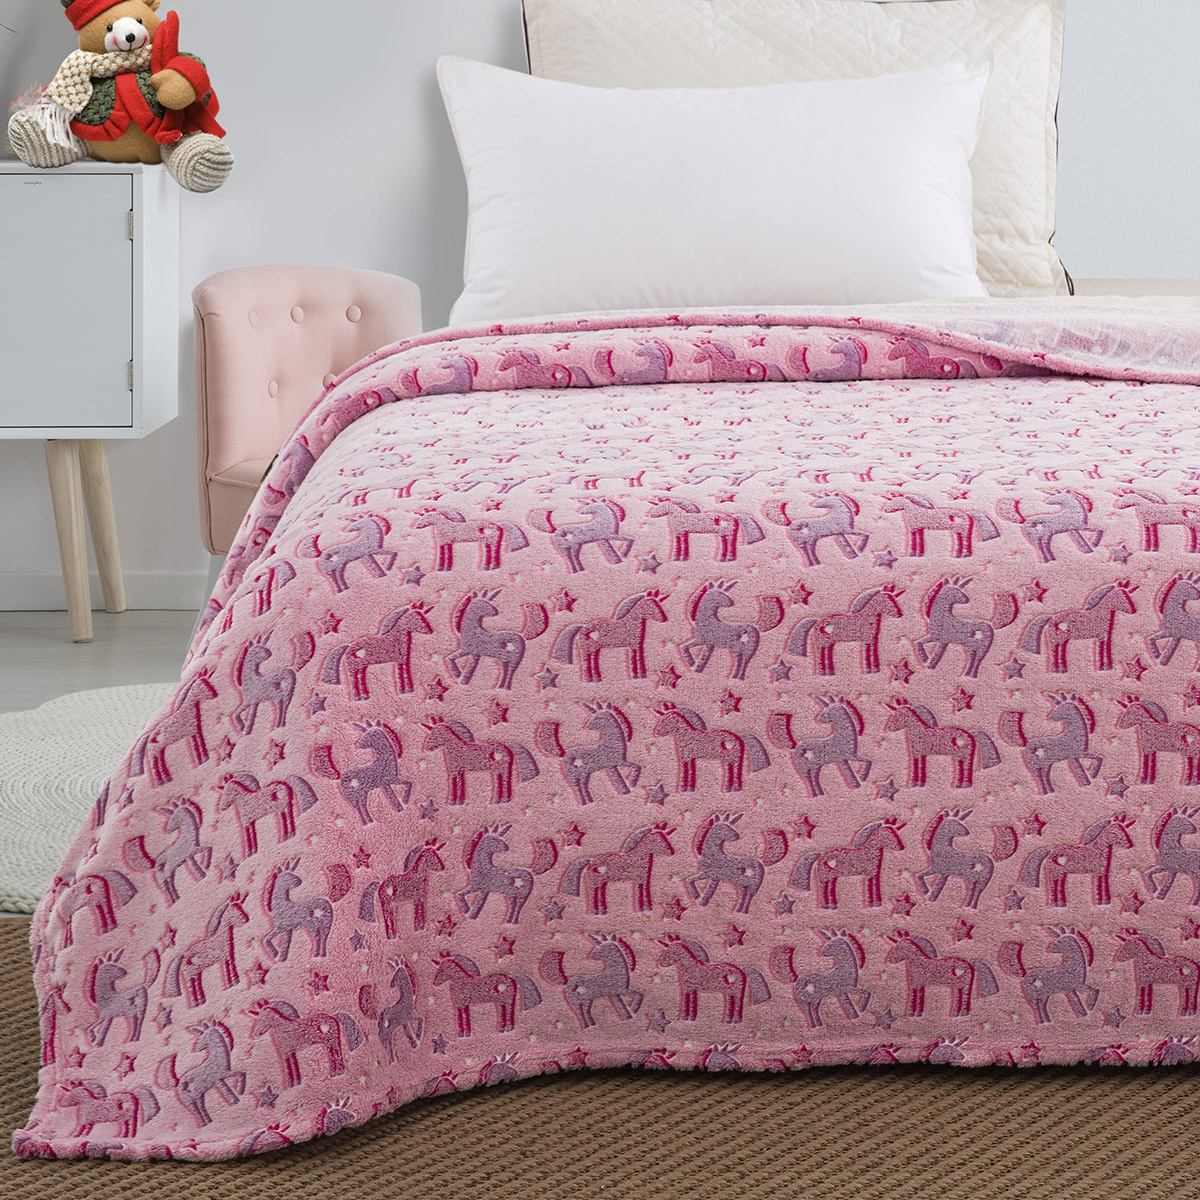 Κουβέρτα μονή φωσφορίζουσα Art 6148 160×220 Ροζ Beauty Home